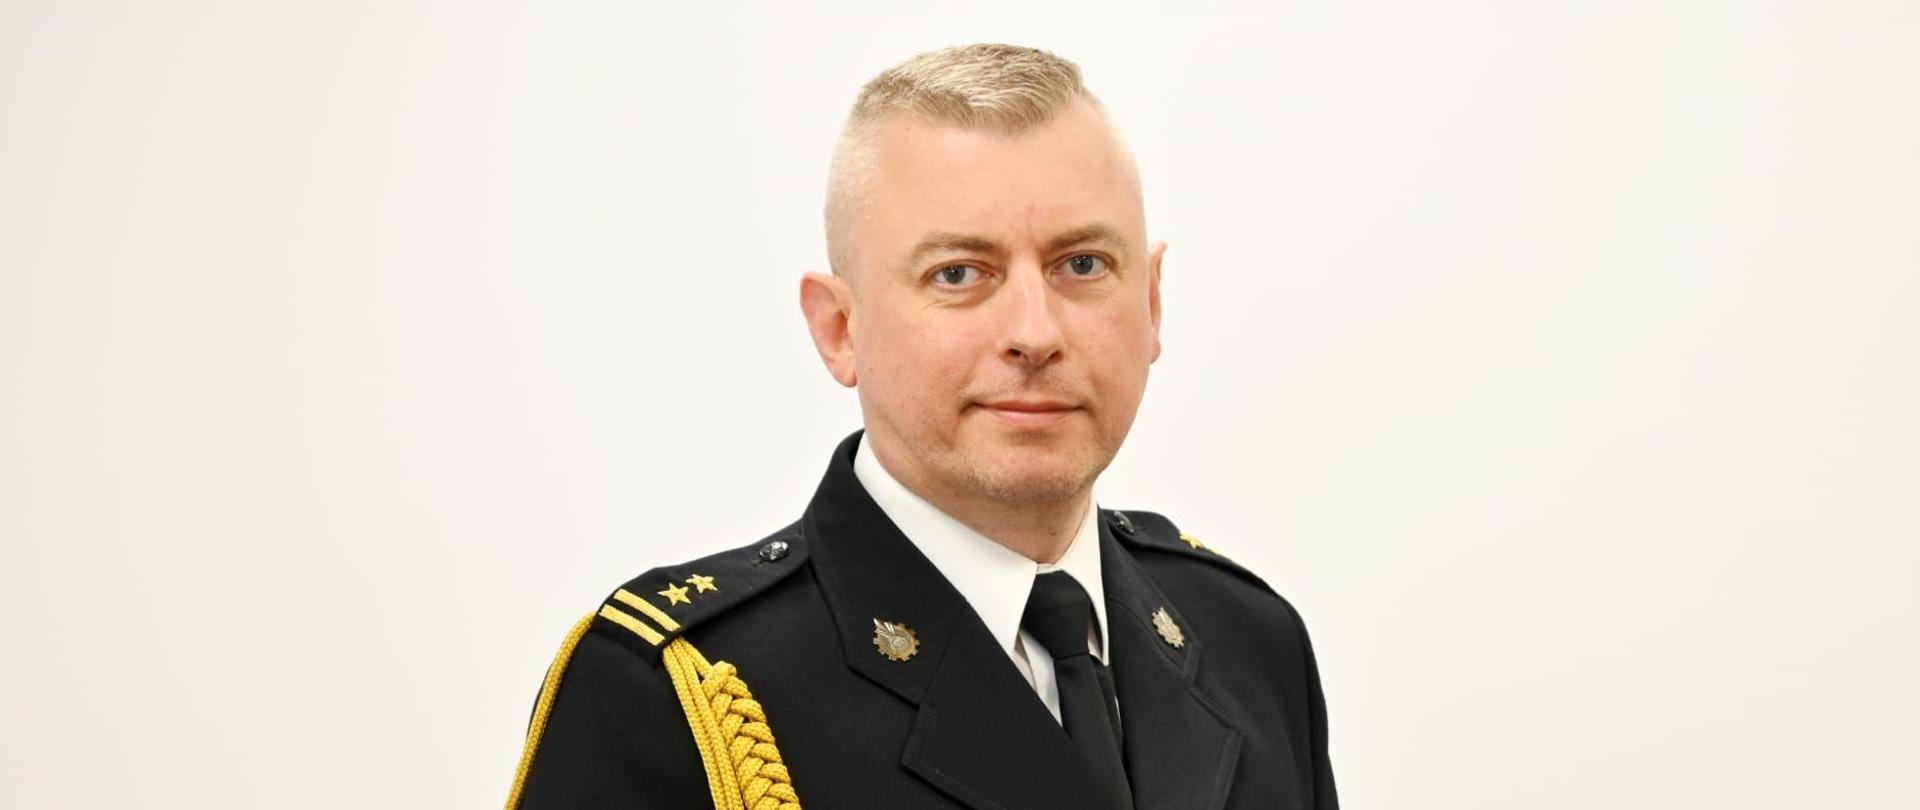 Zdjęcie portretowe w mundurze wyjściowym przedstawiające sylwetkę zastępcy komendanta miejskiego państwowej straży pożarnej w Elblągu.